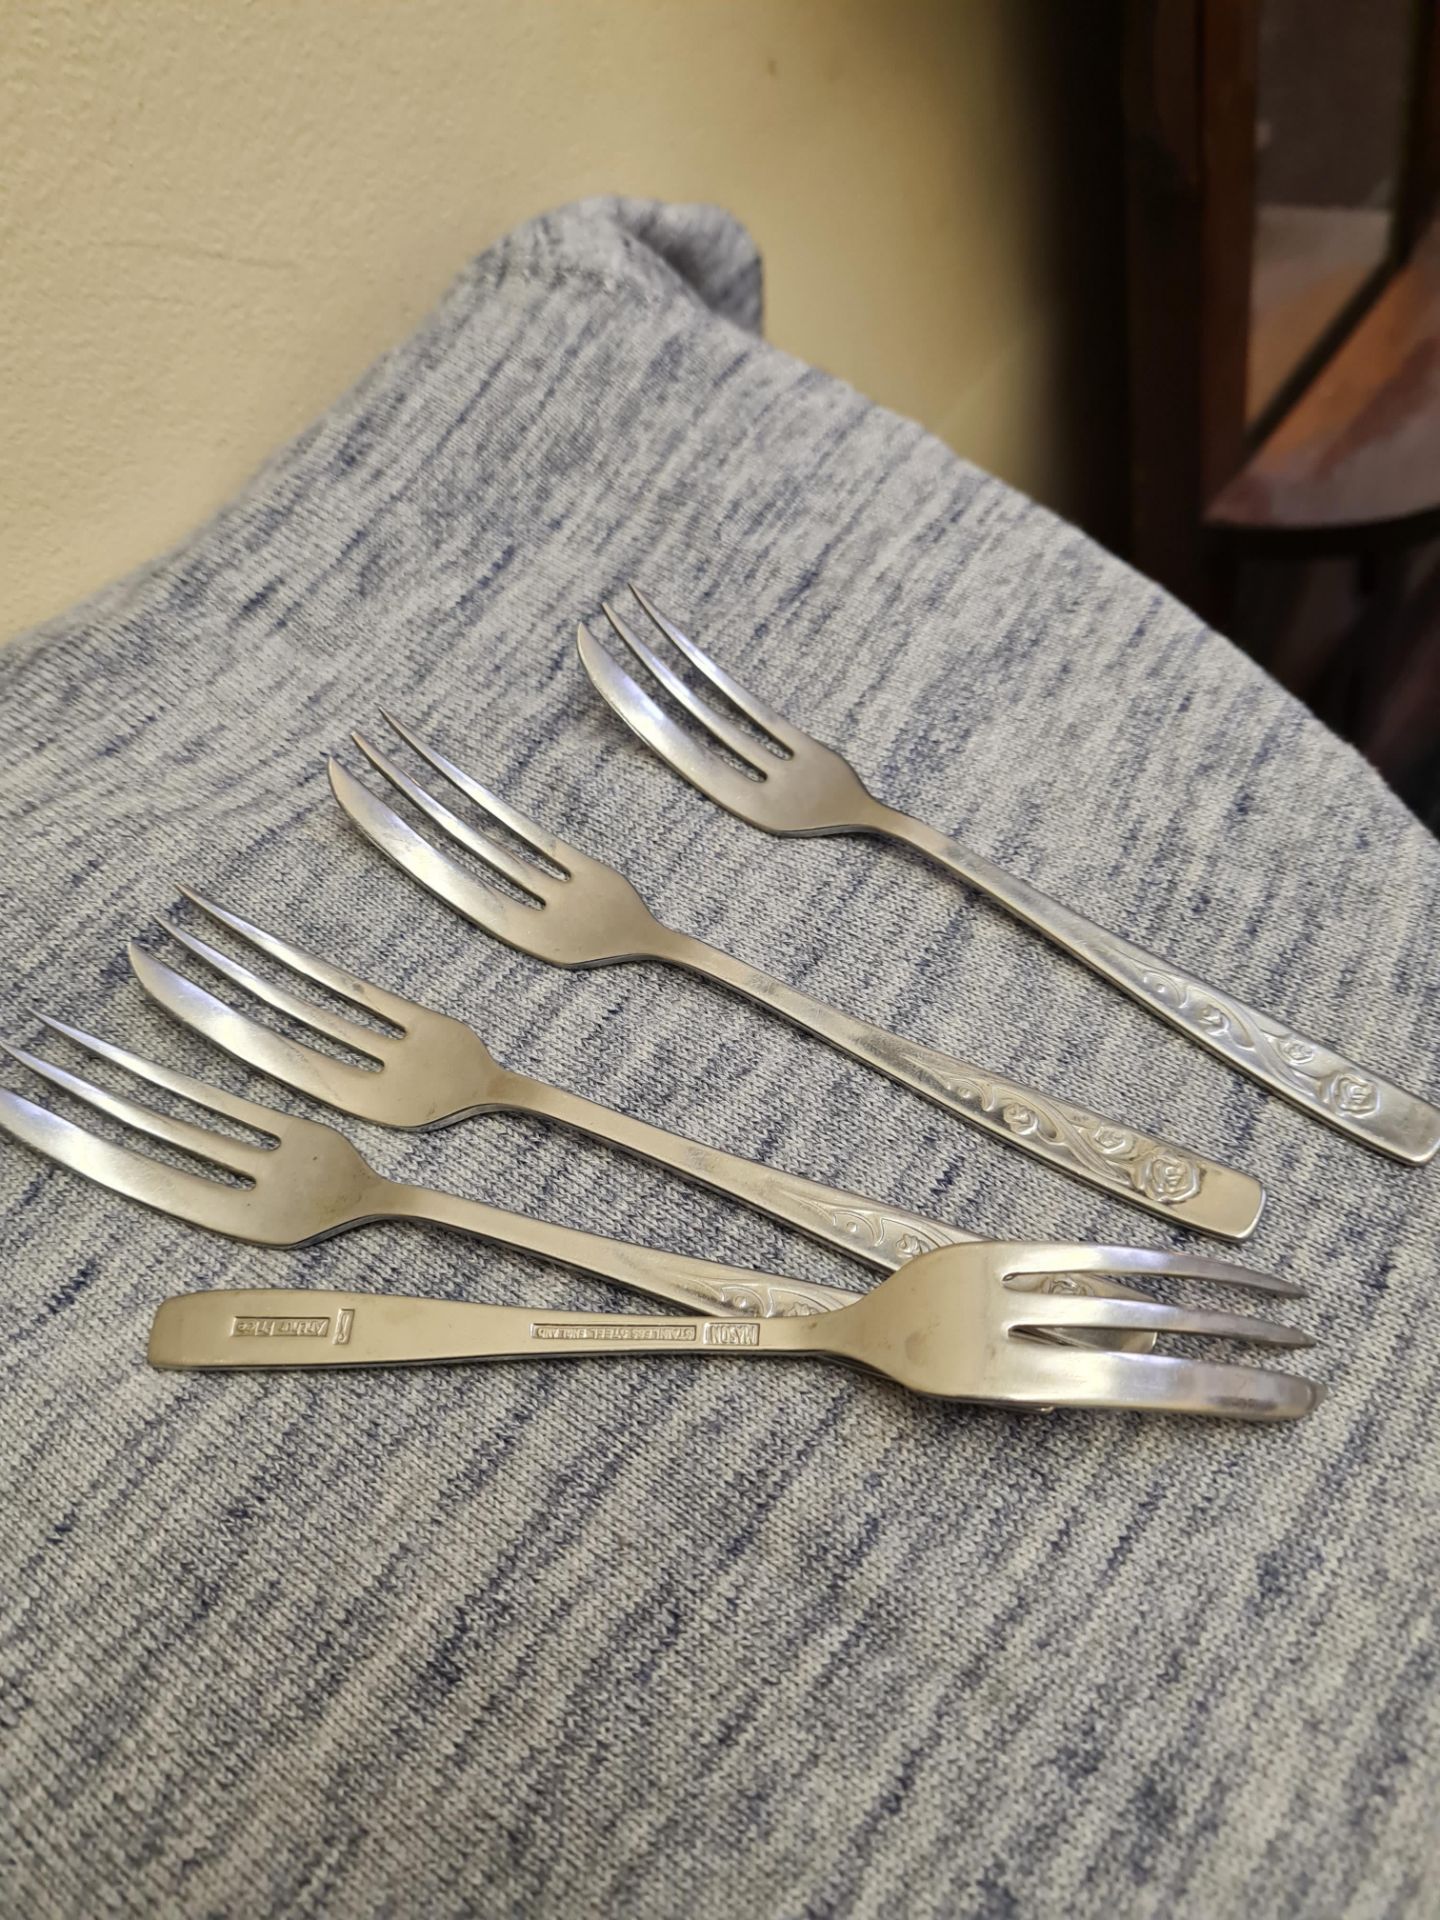 Vintage arutr Price forks